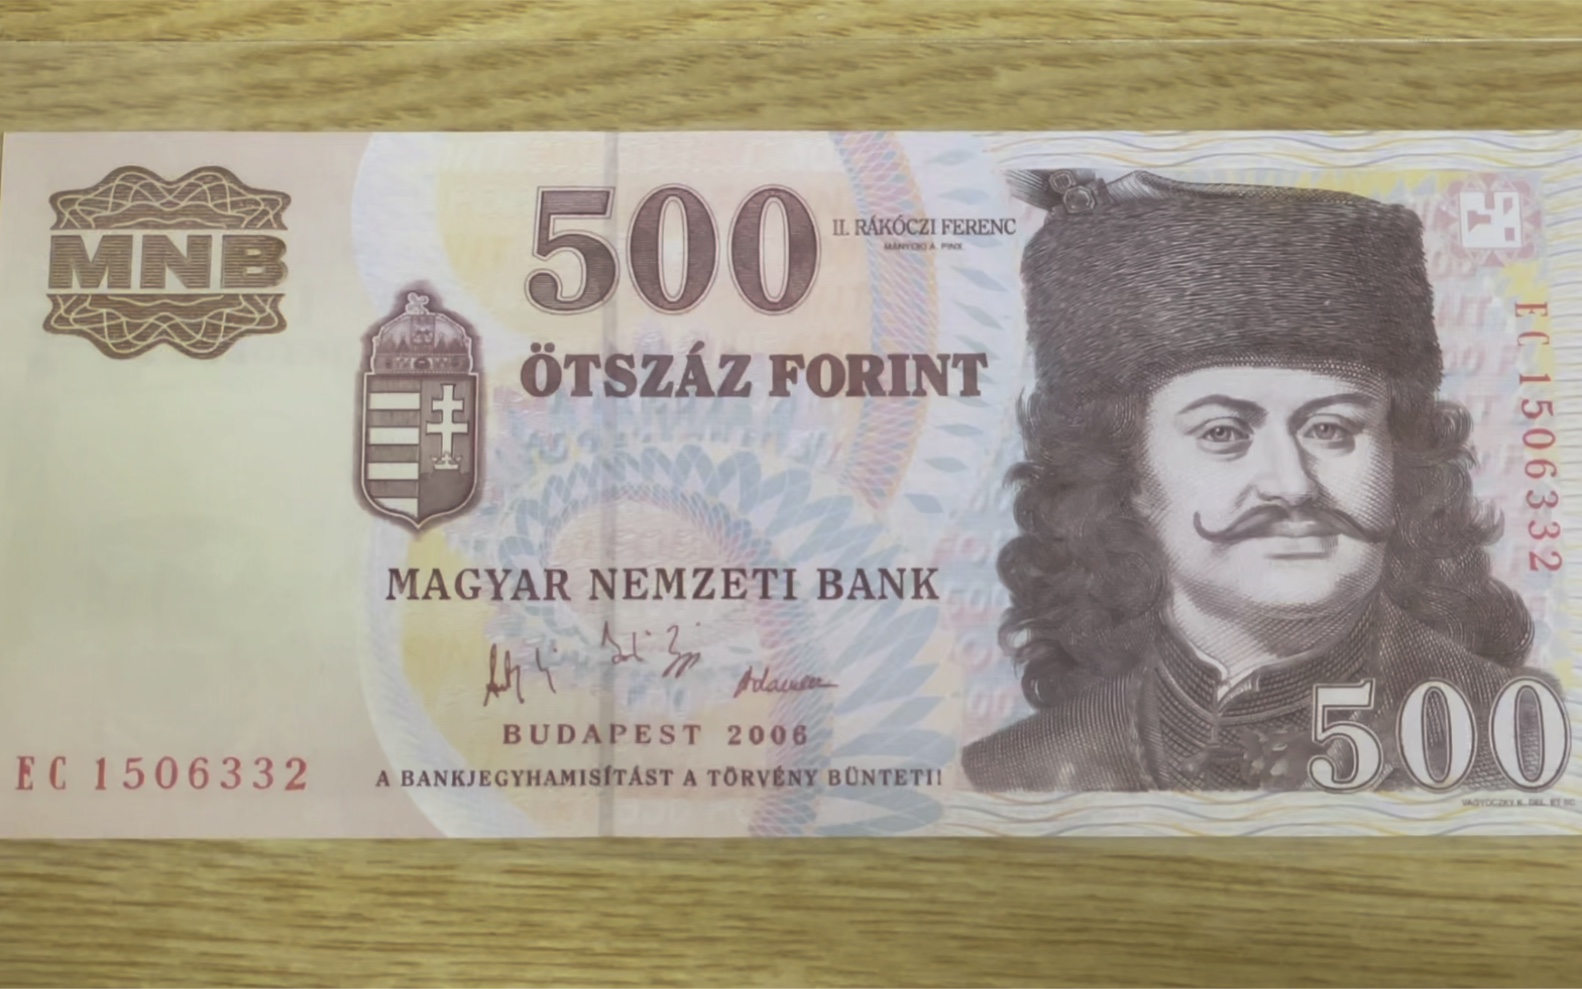 今天讲匈牙利事件50周年纪念钞这张纪念钞的价格特别便宜也就60块钱